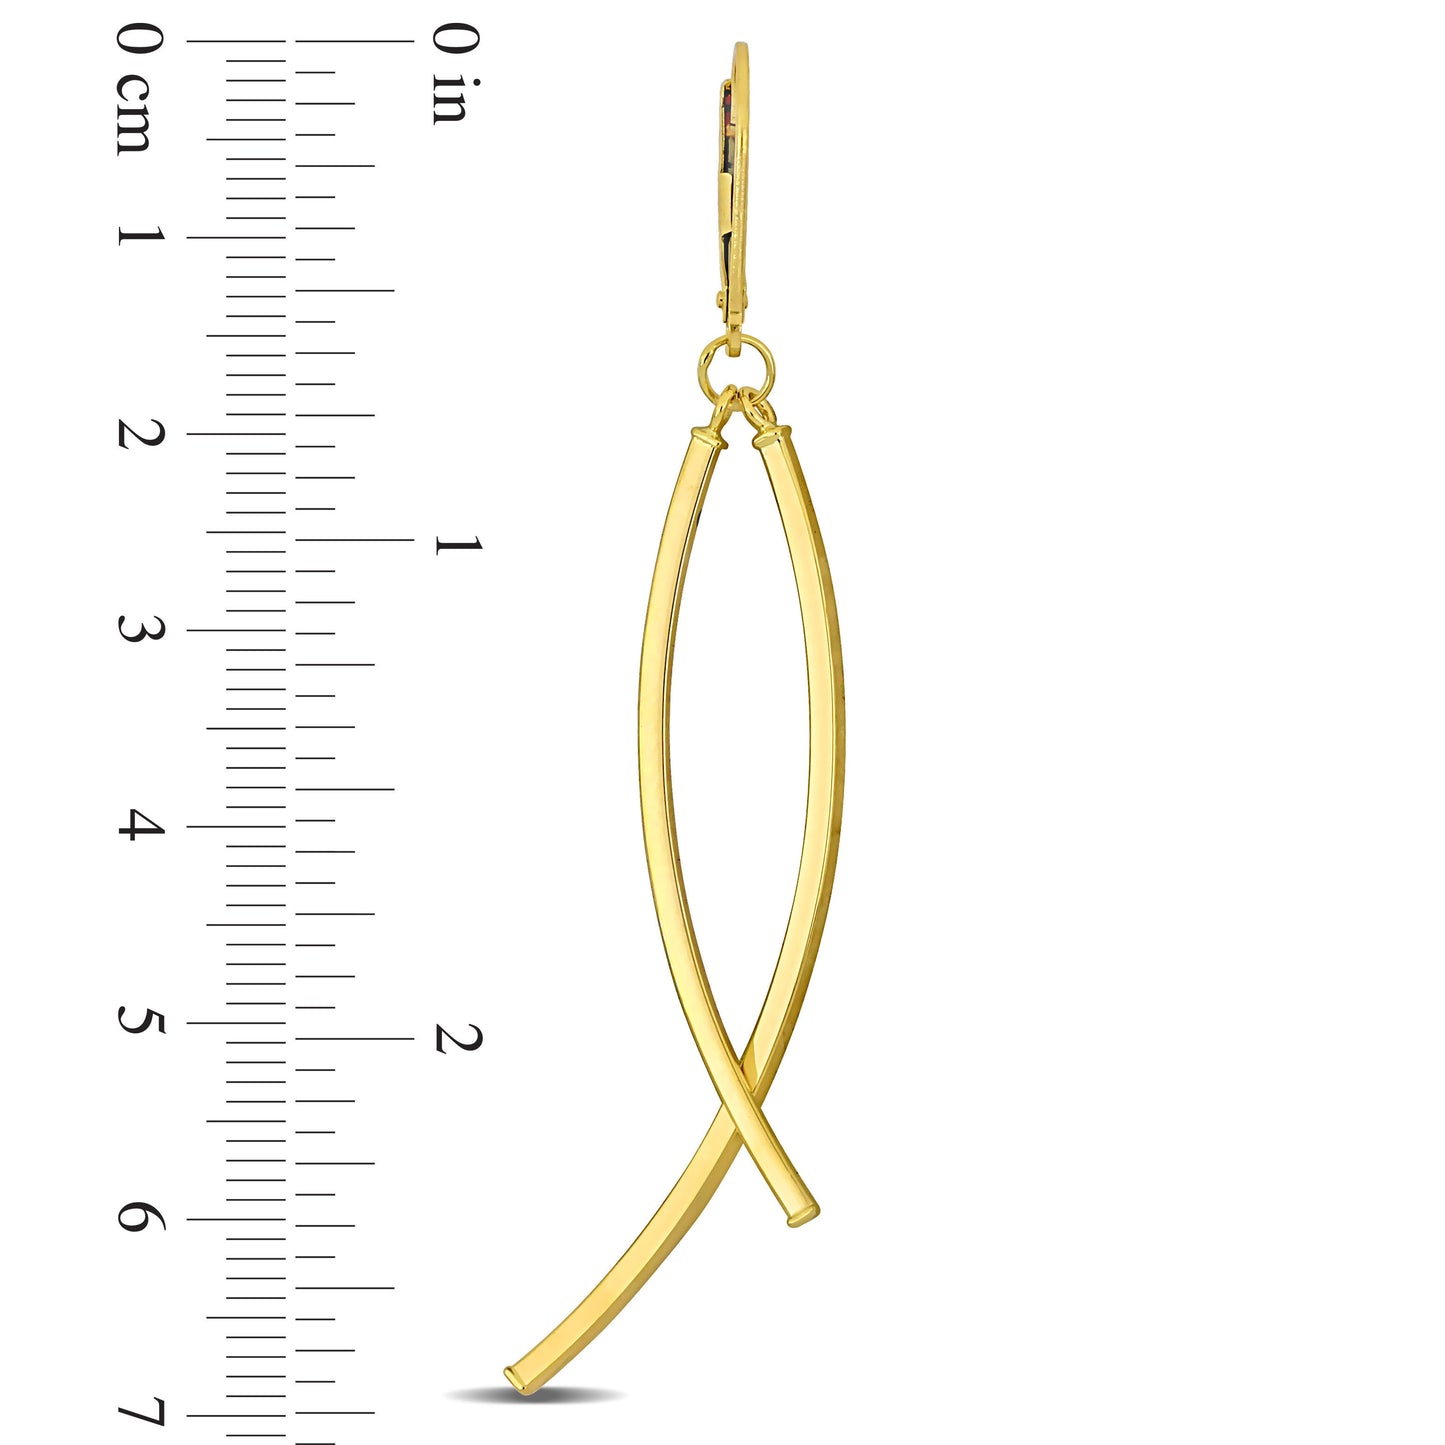 Cross Hoop Earrings in 10k Yellow Gold